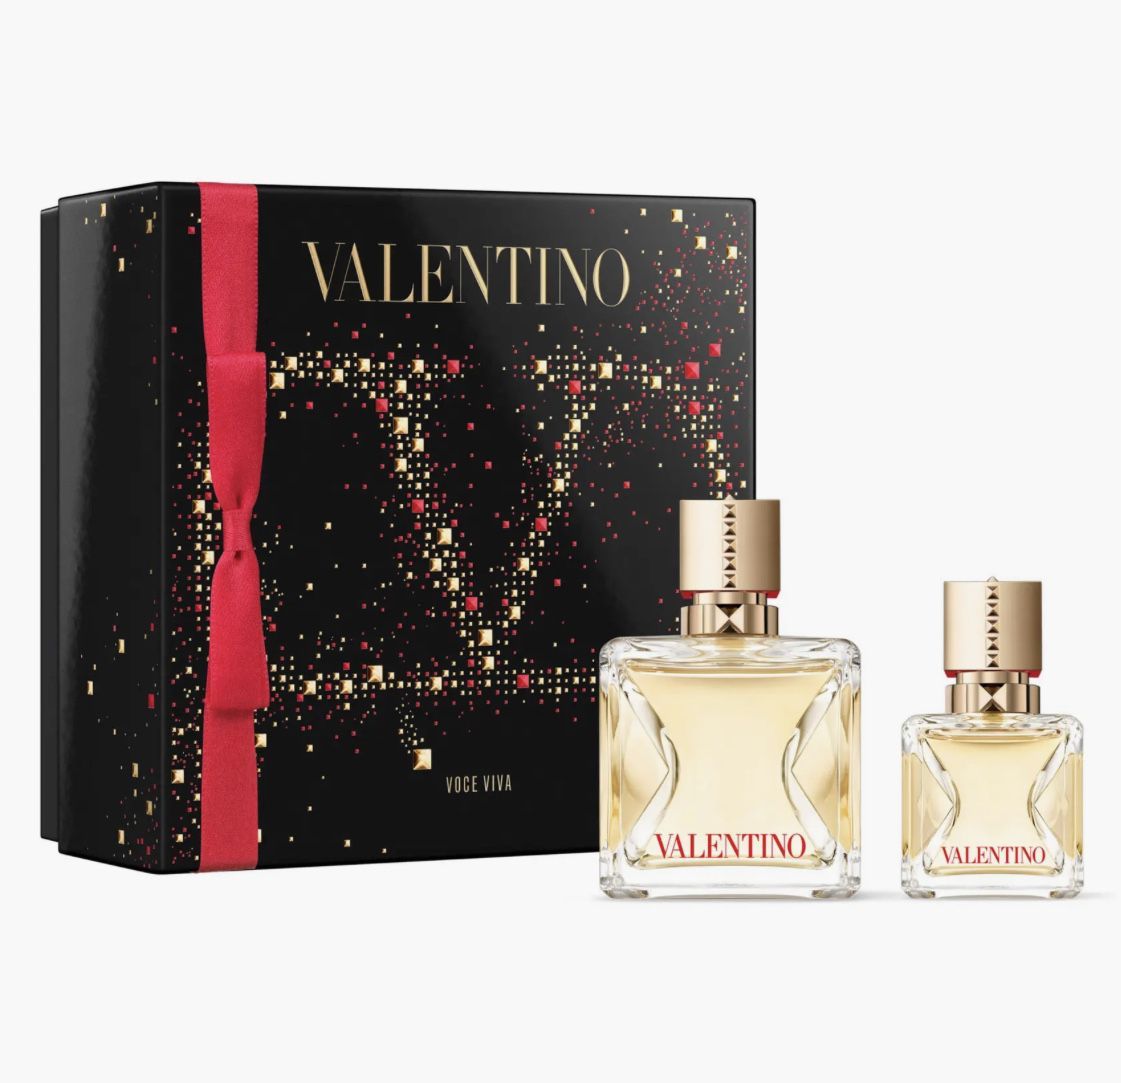 Valentino Voce Viva Perfume Set